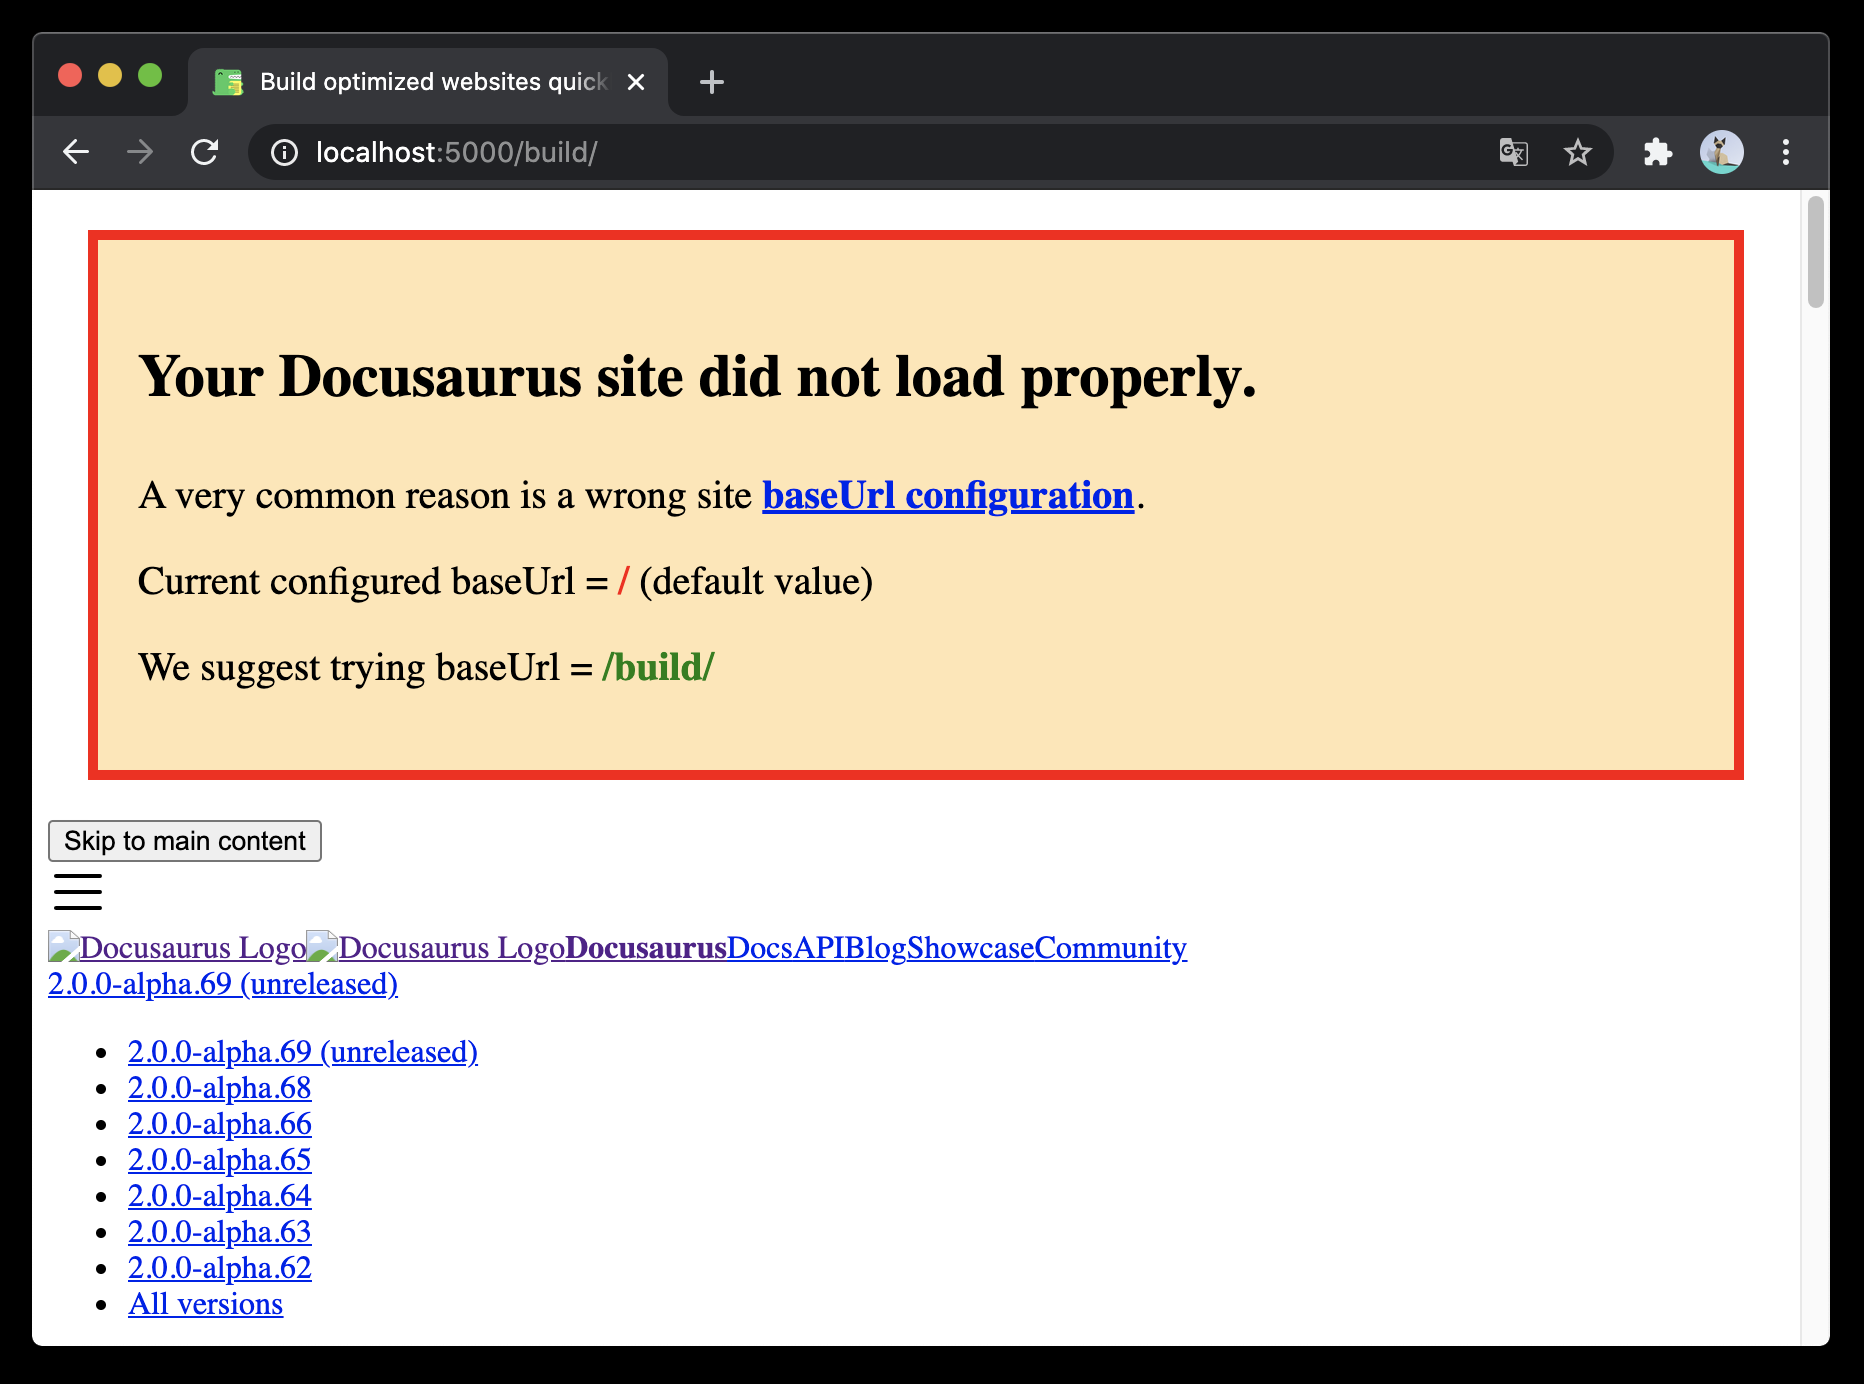 一个 base URL issue 横幅。 样式非常粗糙，因为  样式表加载失败了。 横幅的文本提示 &quot;Your Docusaurus site did not load properly... Current configured baseUrl = / (default value); We suggest trying baseUrl = /build/